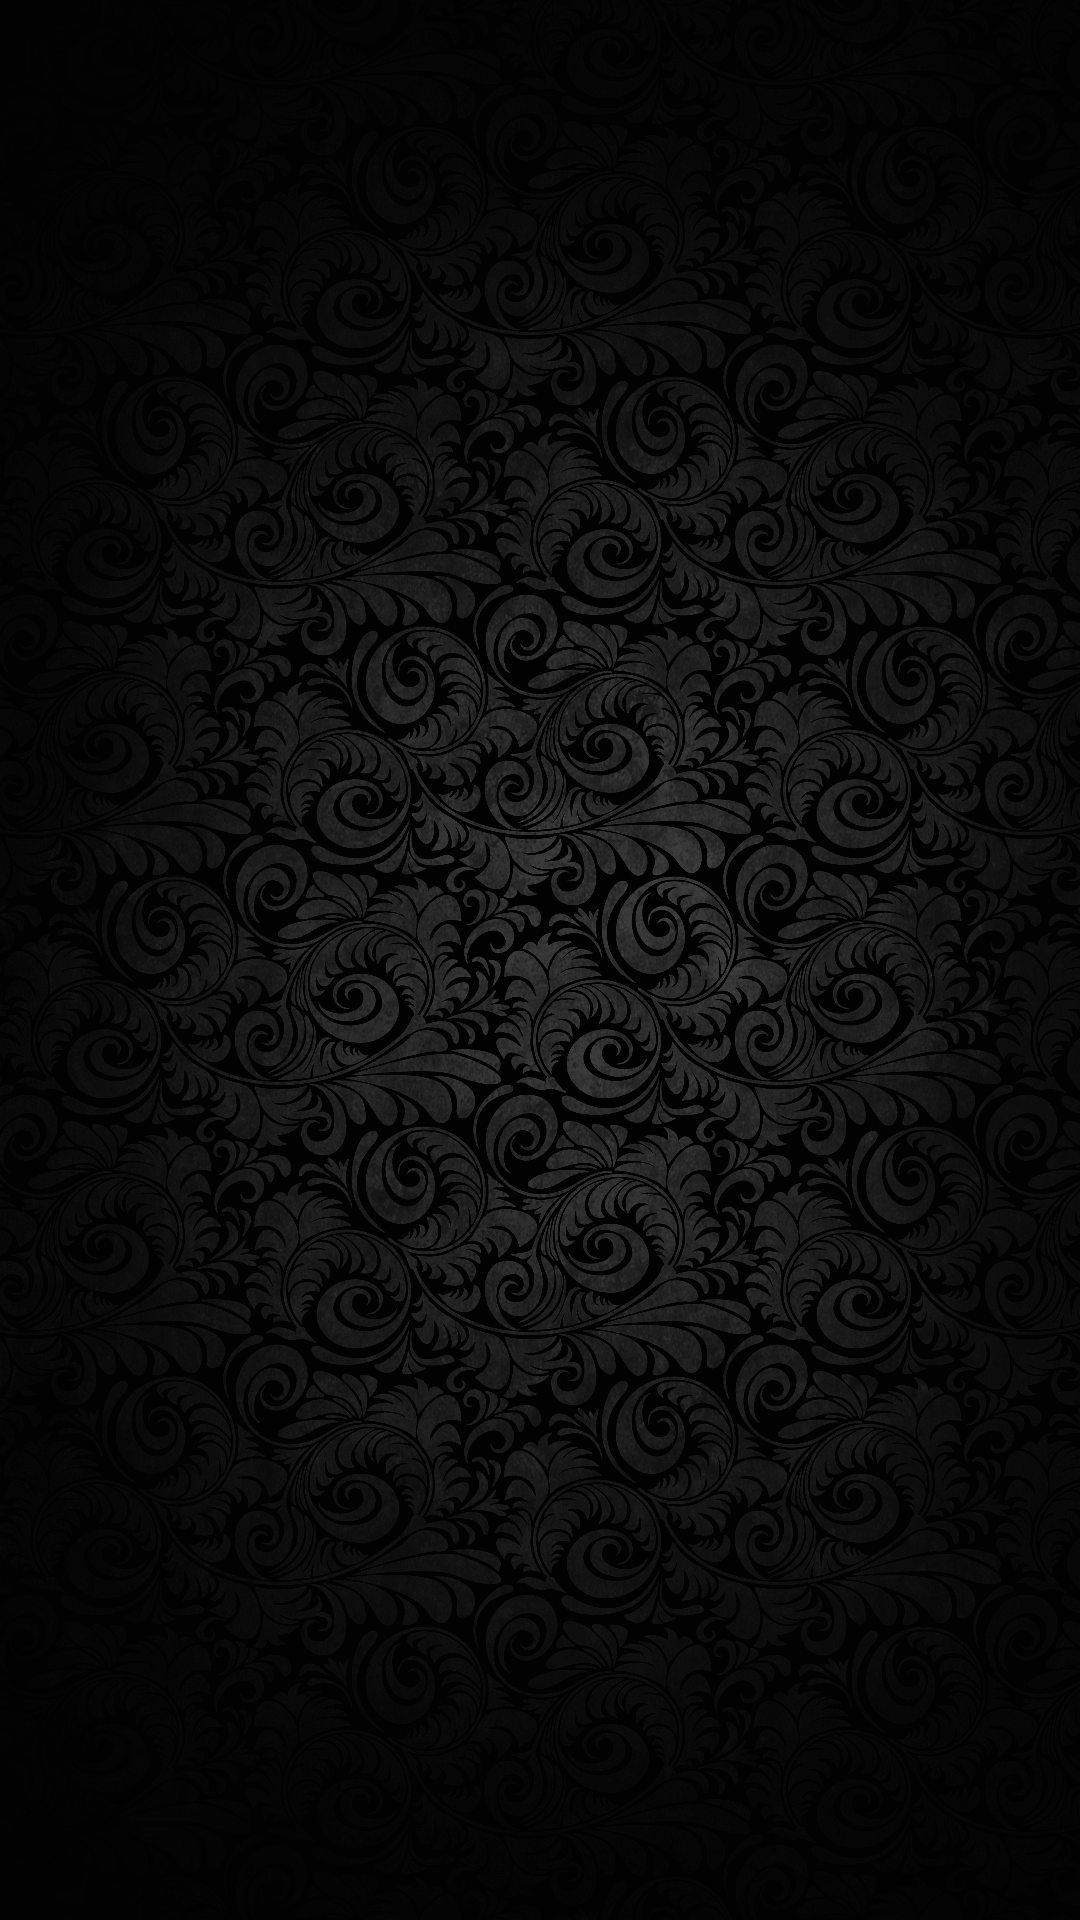 100 Solid Black 4k Wallpapers  Wallpaperscom